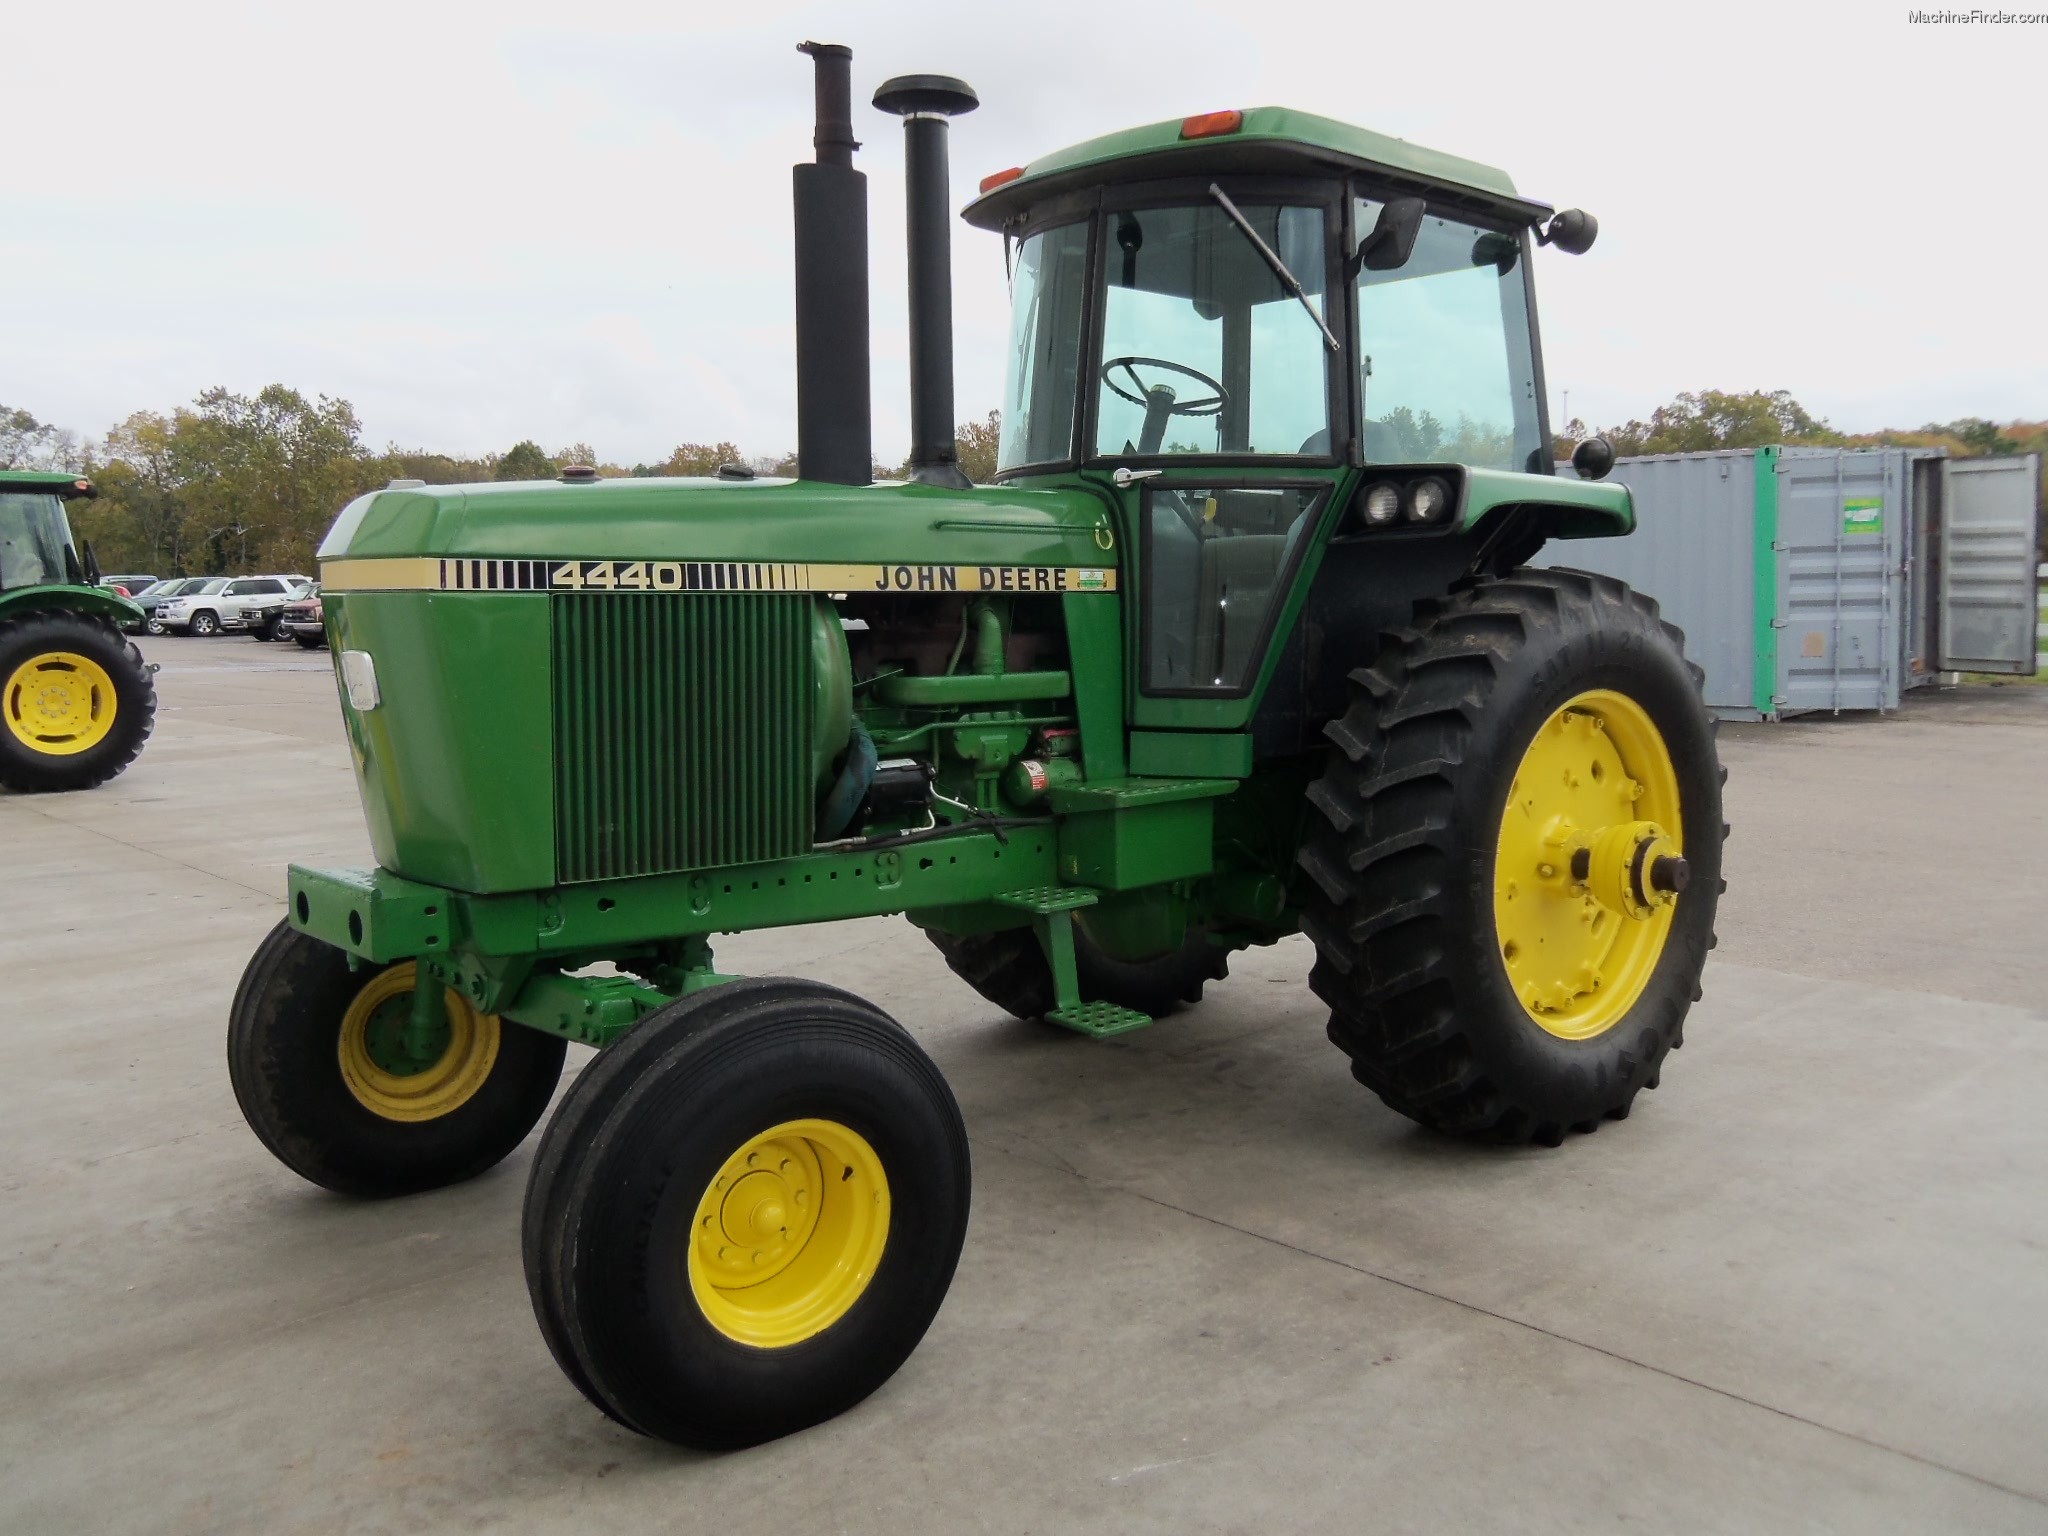 1981 John Deere 4440 Tractors - Row Crop (+100hp) - John Deere ...